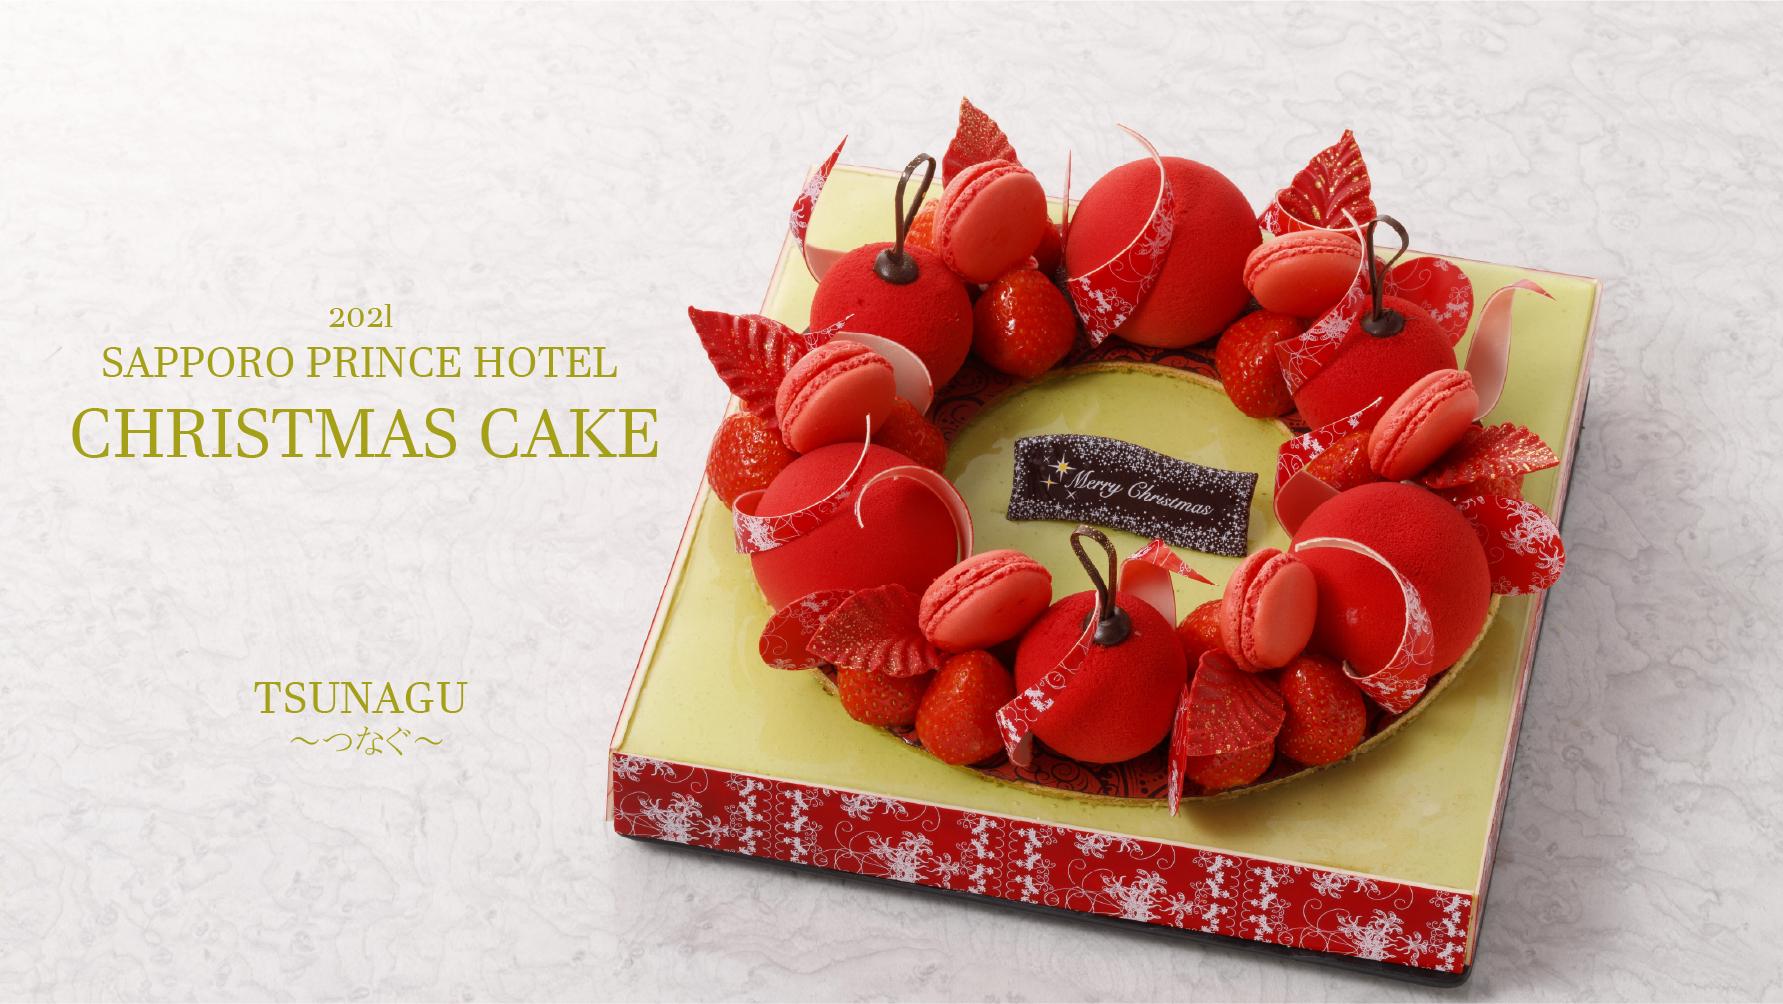 21 Christmas Cake クリスマスケーキ フランス料理 トリアノン 札幌プリンスホテル